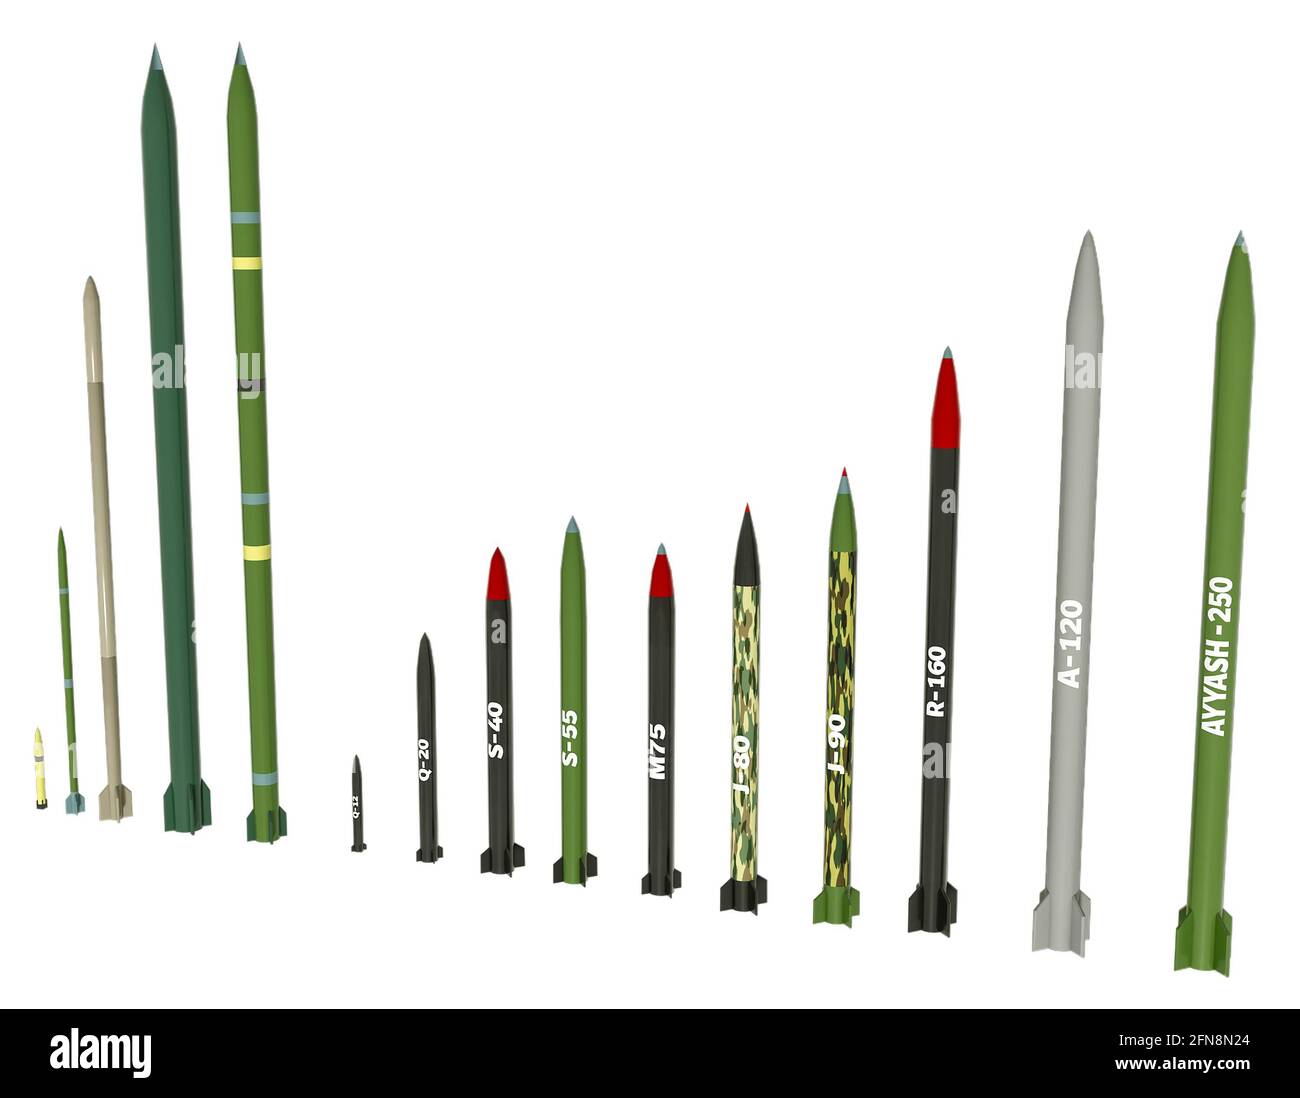 L'arsenal de roquettes du Hamas. Roquettes d'artillerie en service avec l'organisation palestinienne du Hamas. Types de missiles Banque D'Images